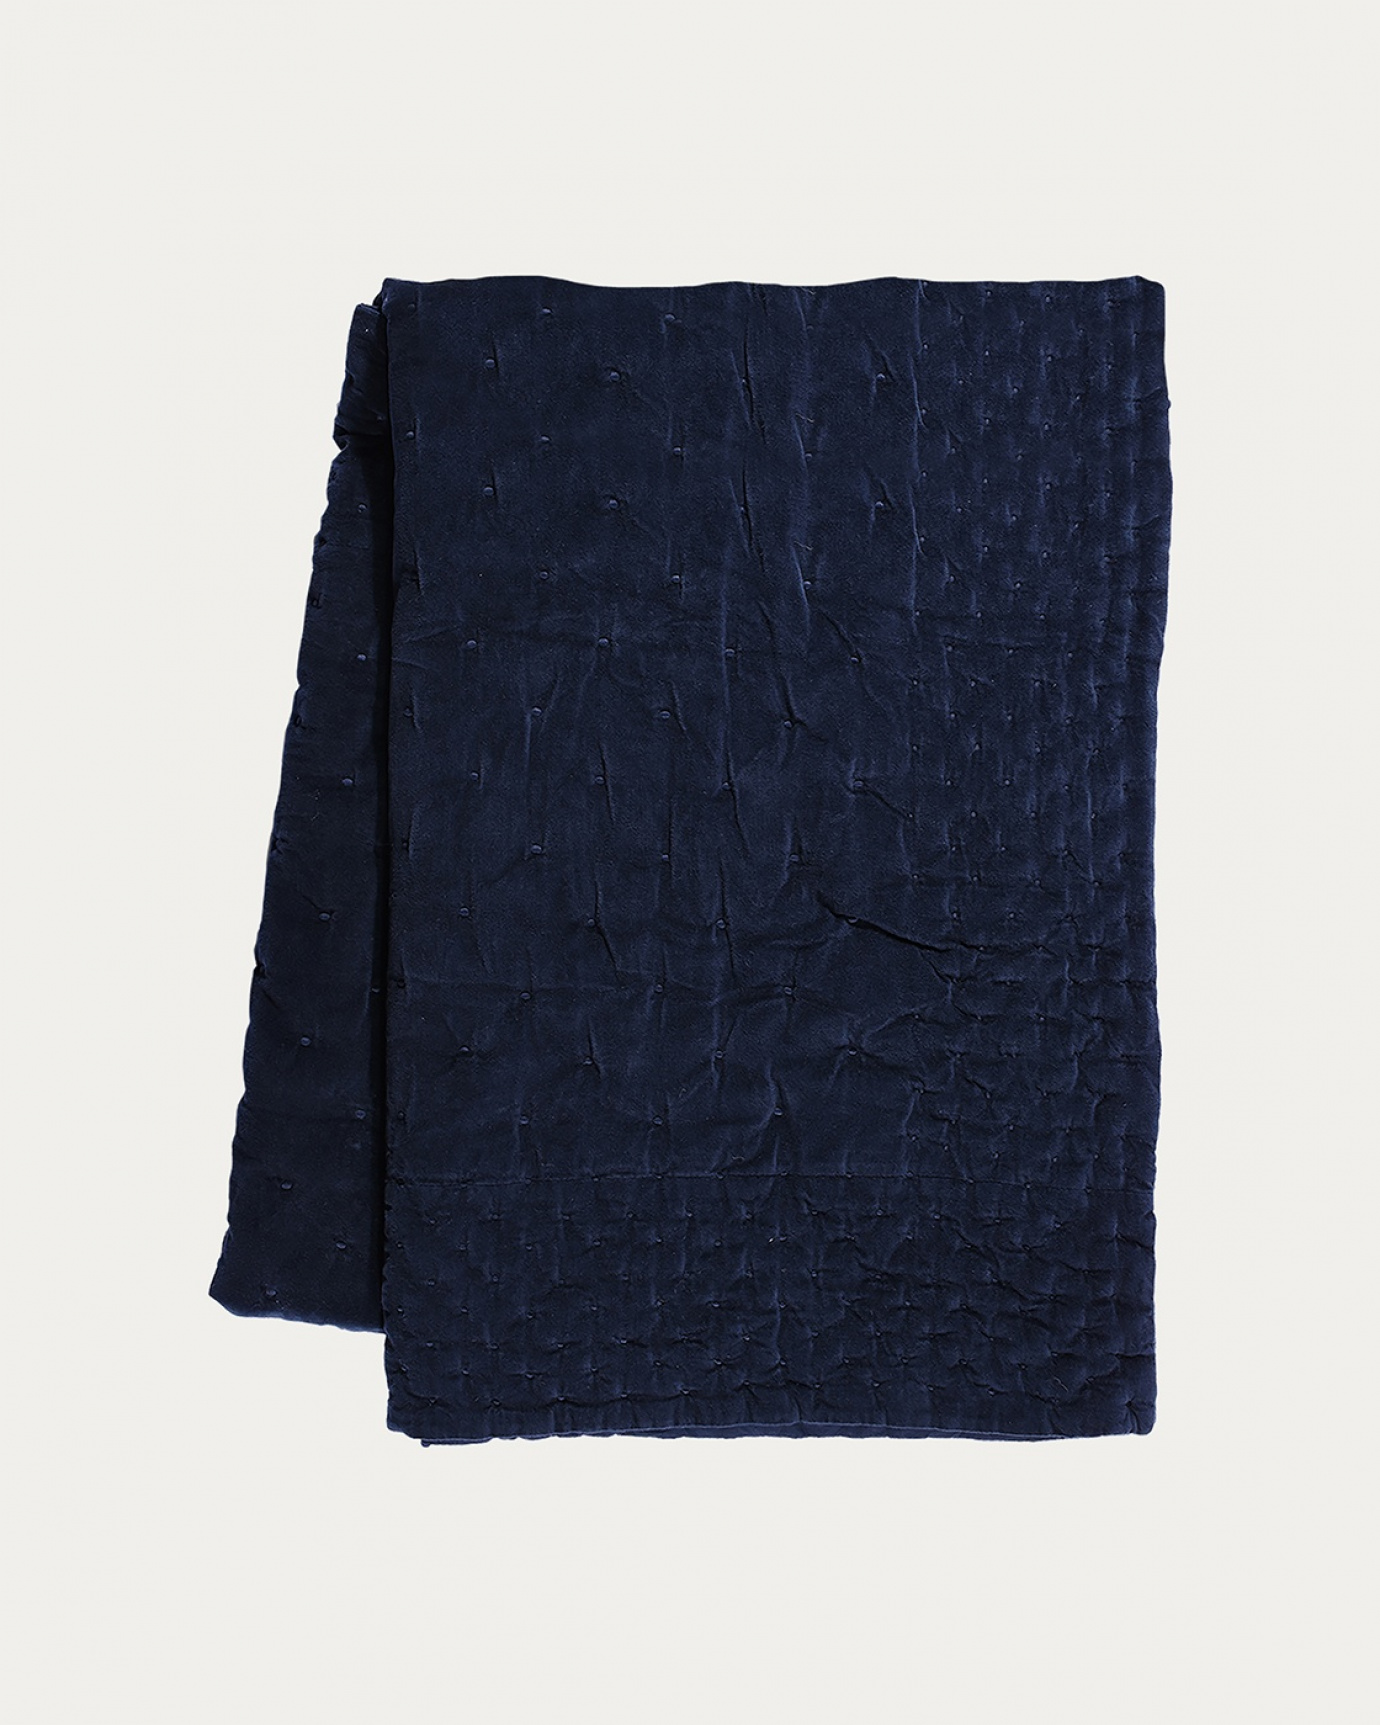 Produktbild tintenblau Tagesdecke PAOLO aus weichem Baumwollsamt für Doppelbett von LINUM DESIGN. Größe 270x260 cm.